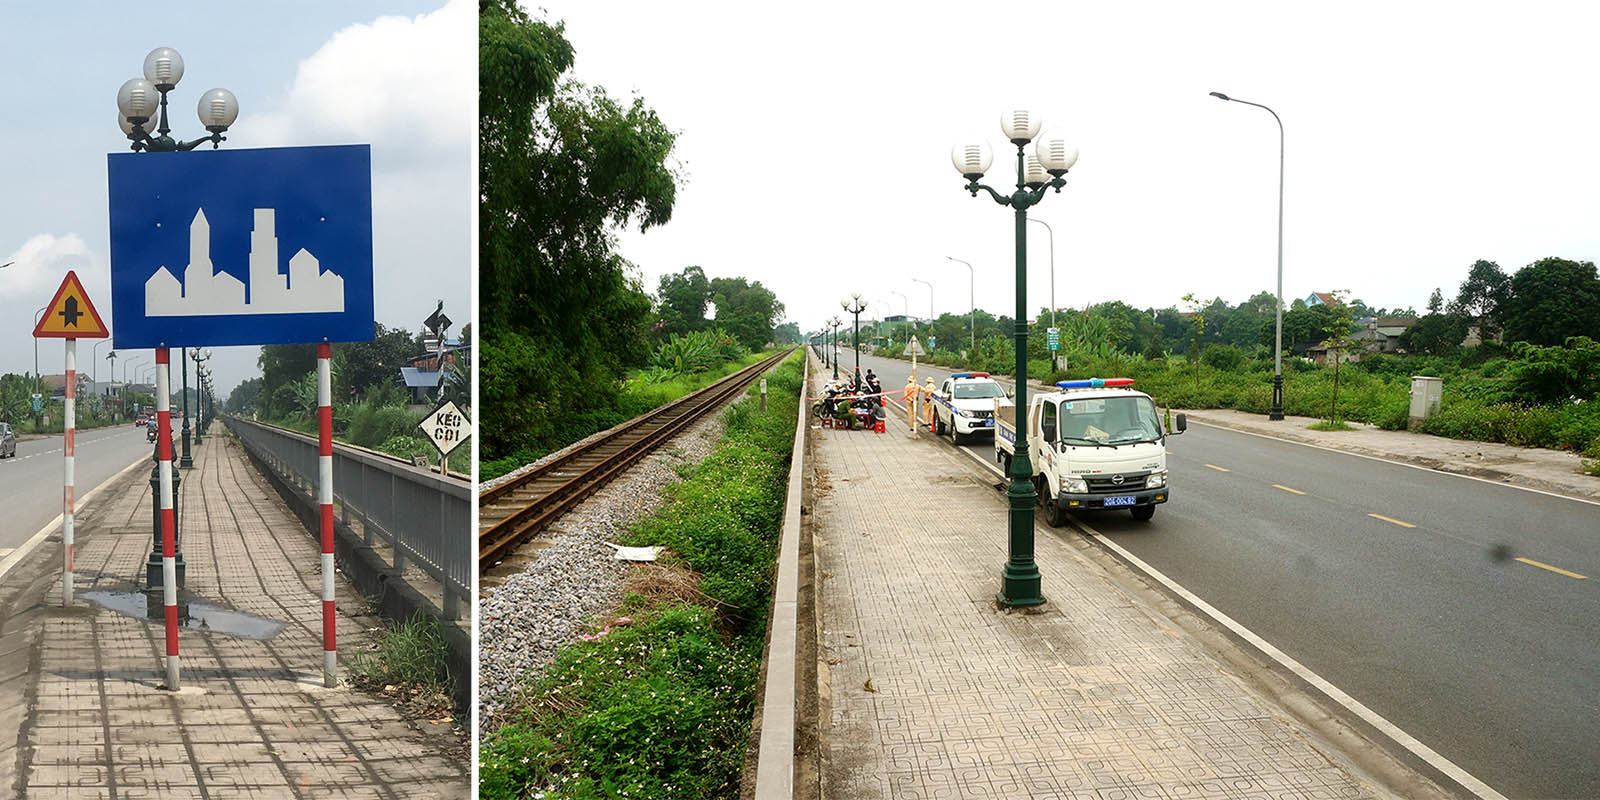 Biển “Bắt đầu khu đông dân cư” (ảnh trái) và chốt kiểm tra tốc độ trên đoạn đường hai bên không có nhà dân (ảnh phải) trên đường Việt Bắc, đoạn qua phường Trung Thành, TP Thái Nguyên